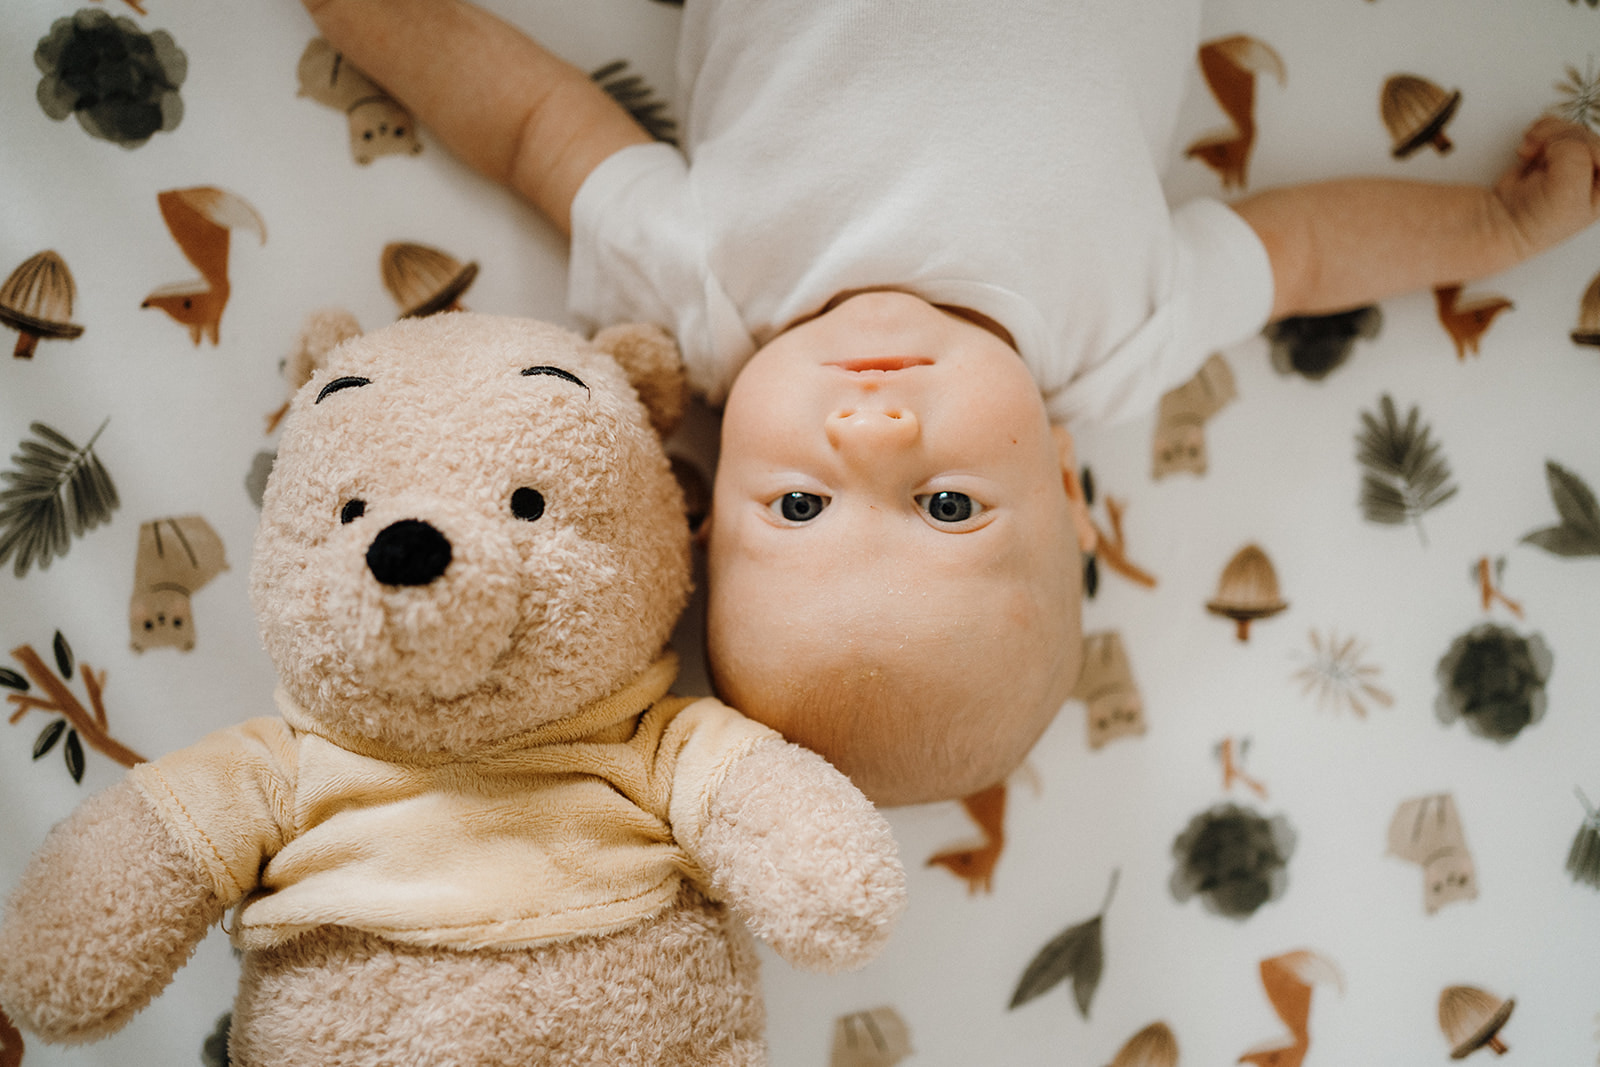 Newborn lying on their back with a teddy bear by their head.